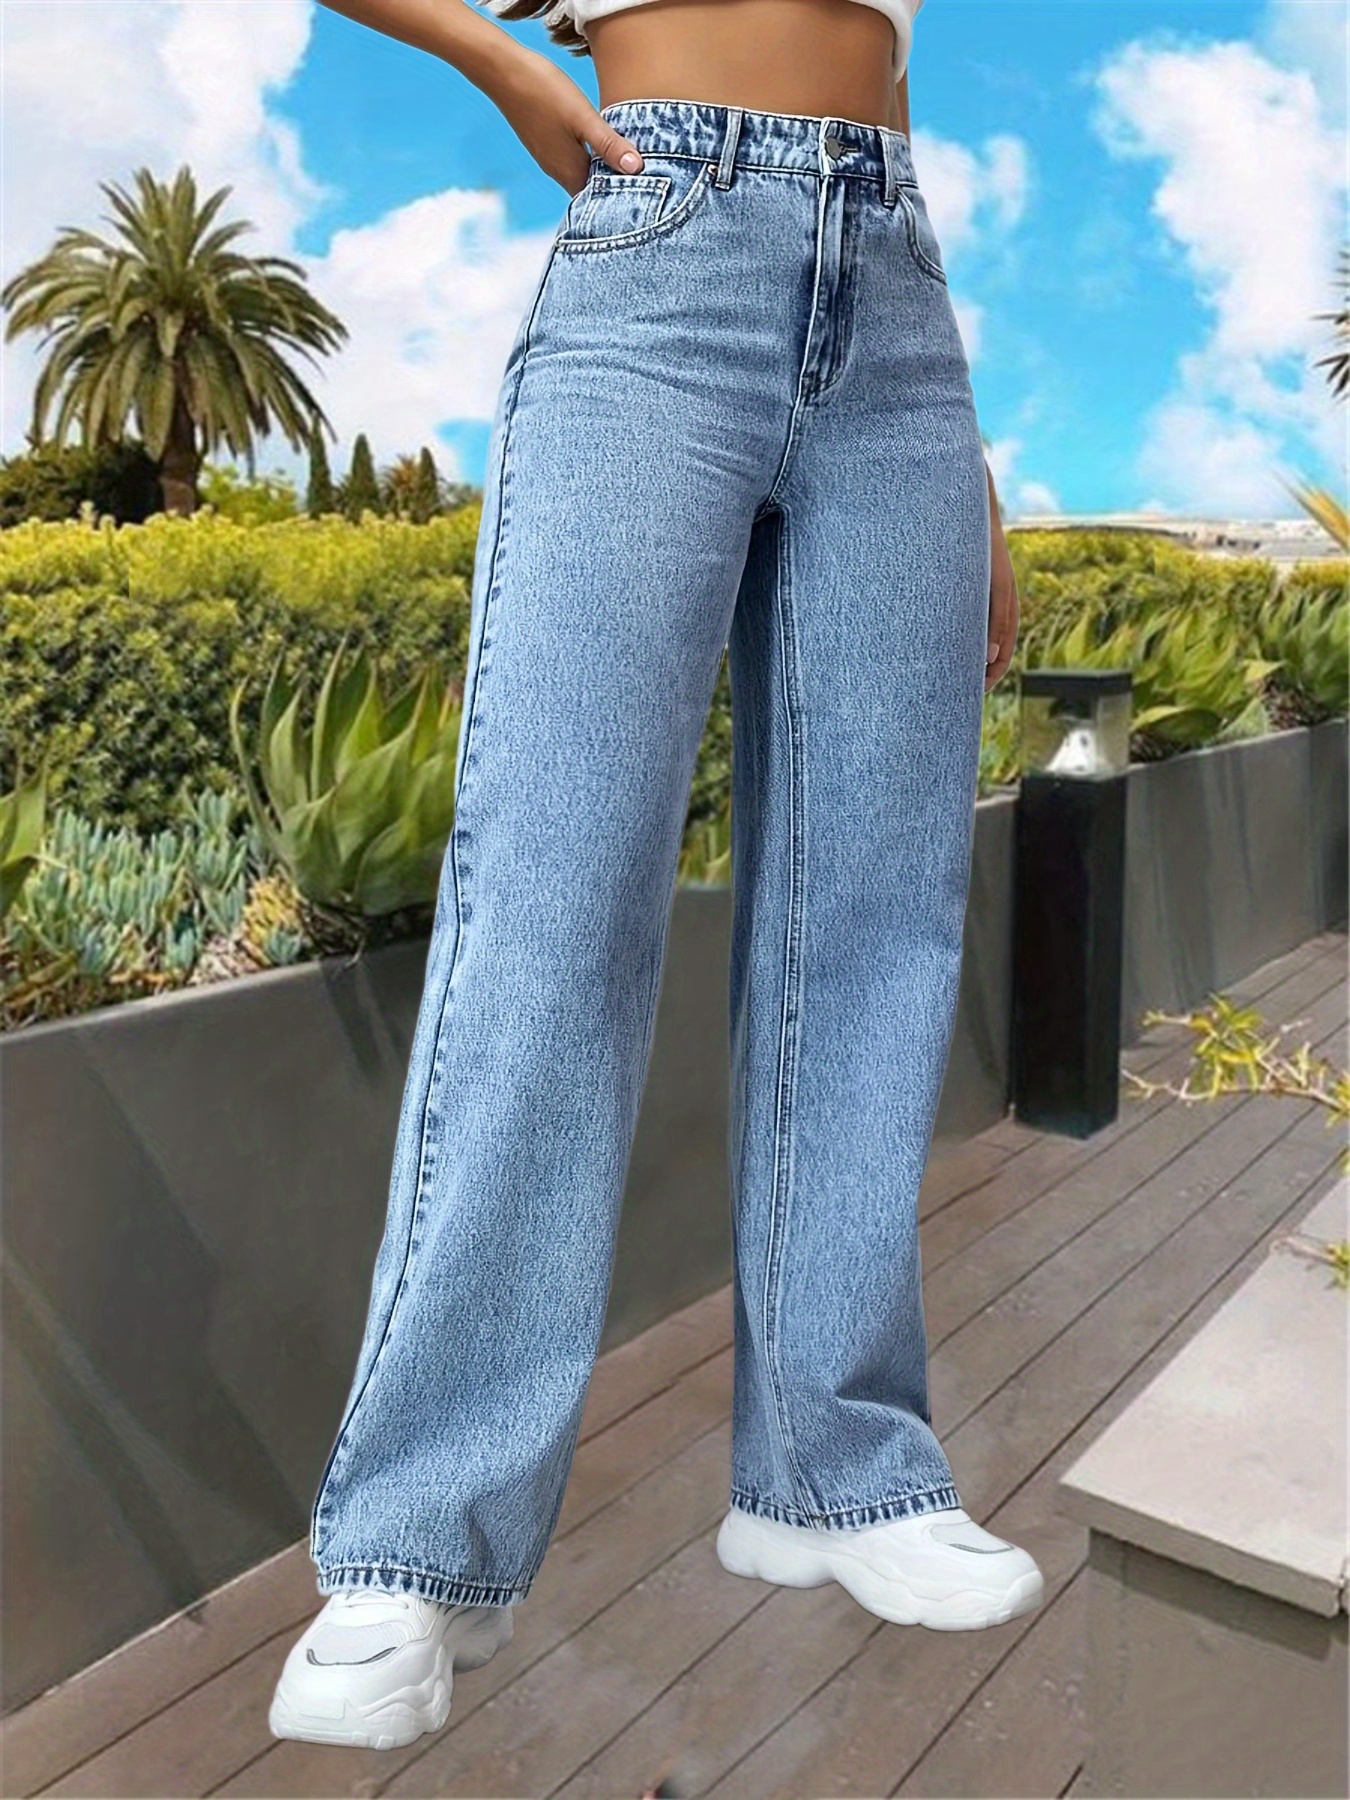 Calças de ganga retas de cintura alta com estampa floral, bolsos oblíquos,  corte largo e subida alta, calças de ganga femininas e vestuário